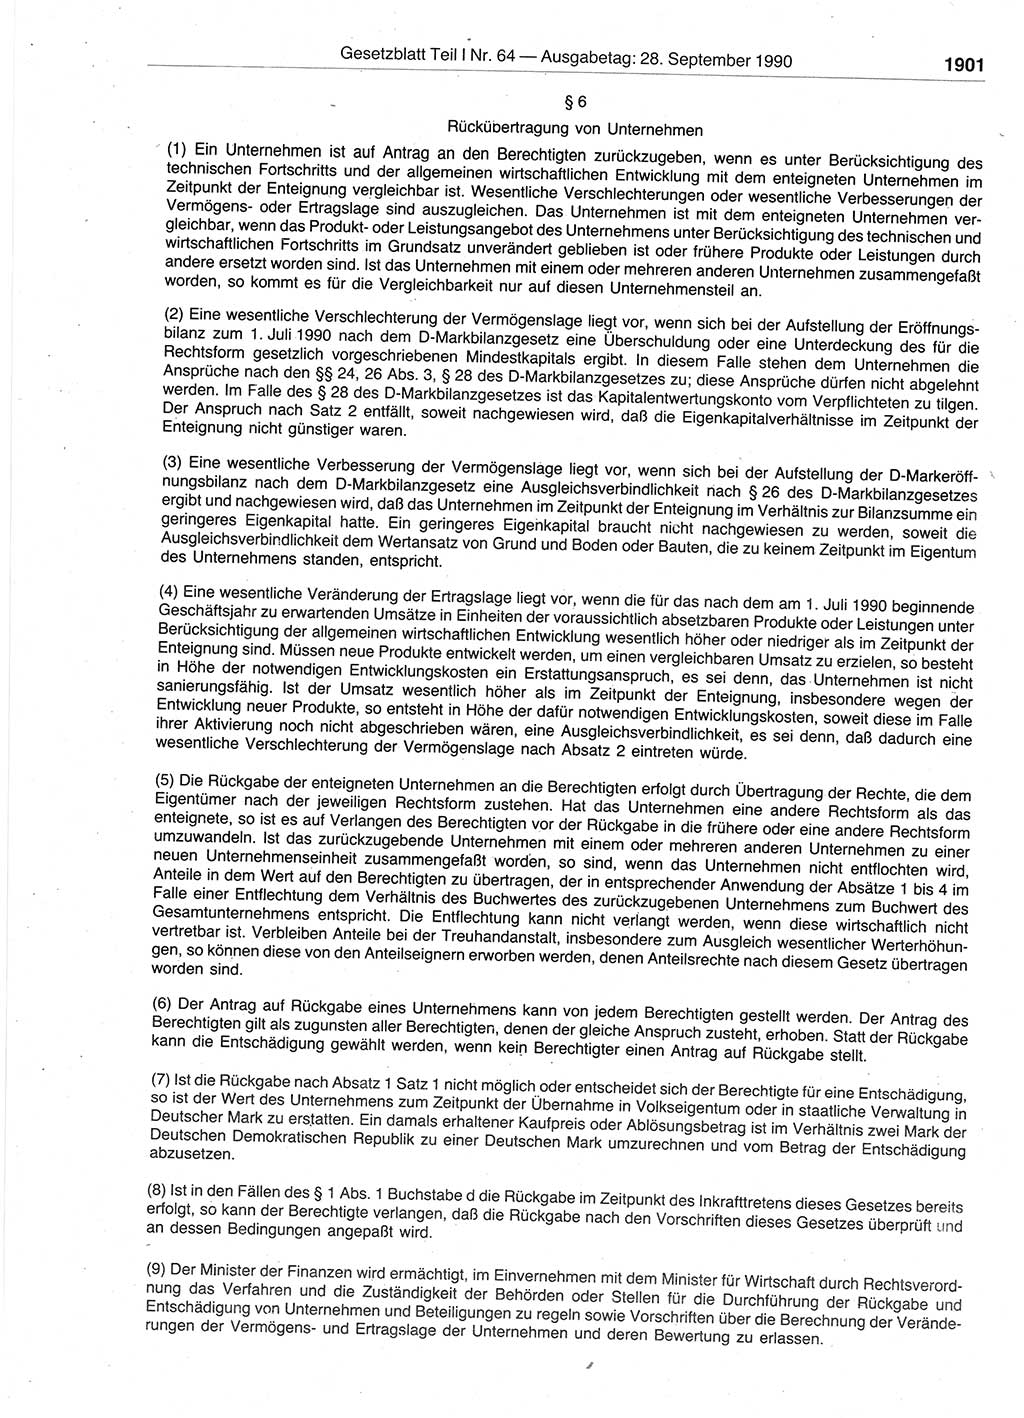 Gesetzblatt (GBl.) der Deutschen Demokratischen Republik (DDR) Teil Ⅰ 1990, Seite 1901 (GBl. DDR Ⅰ 1990, S. 1901)